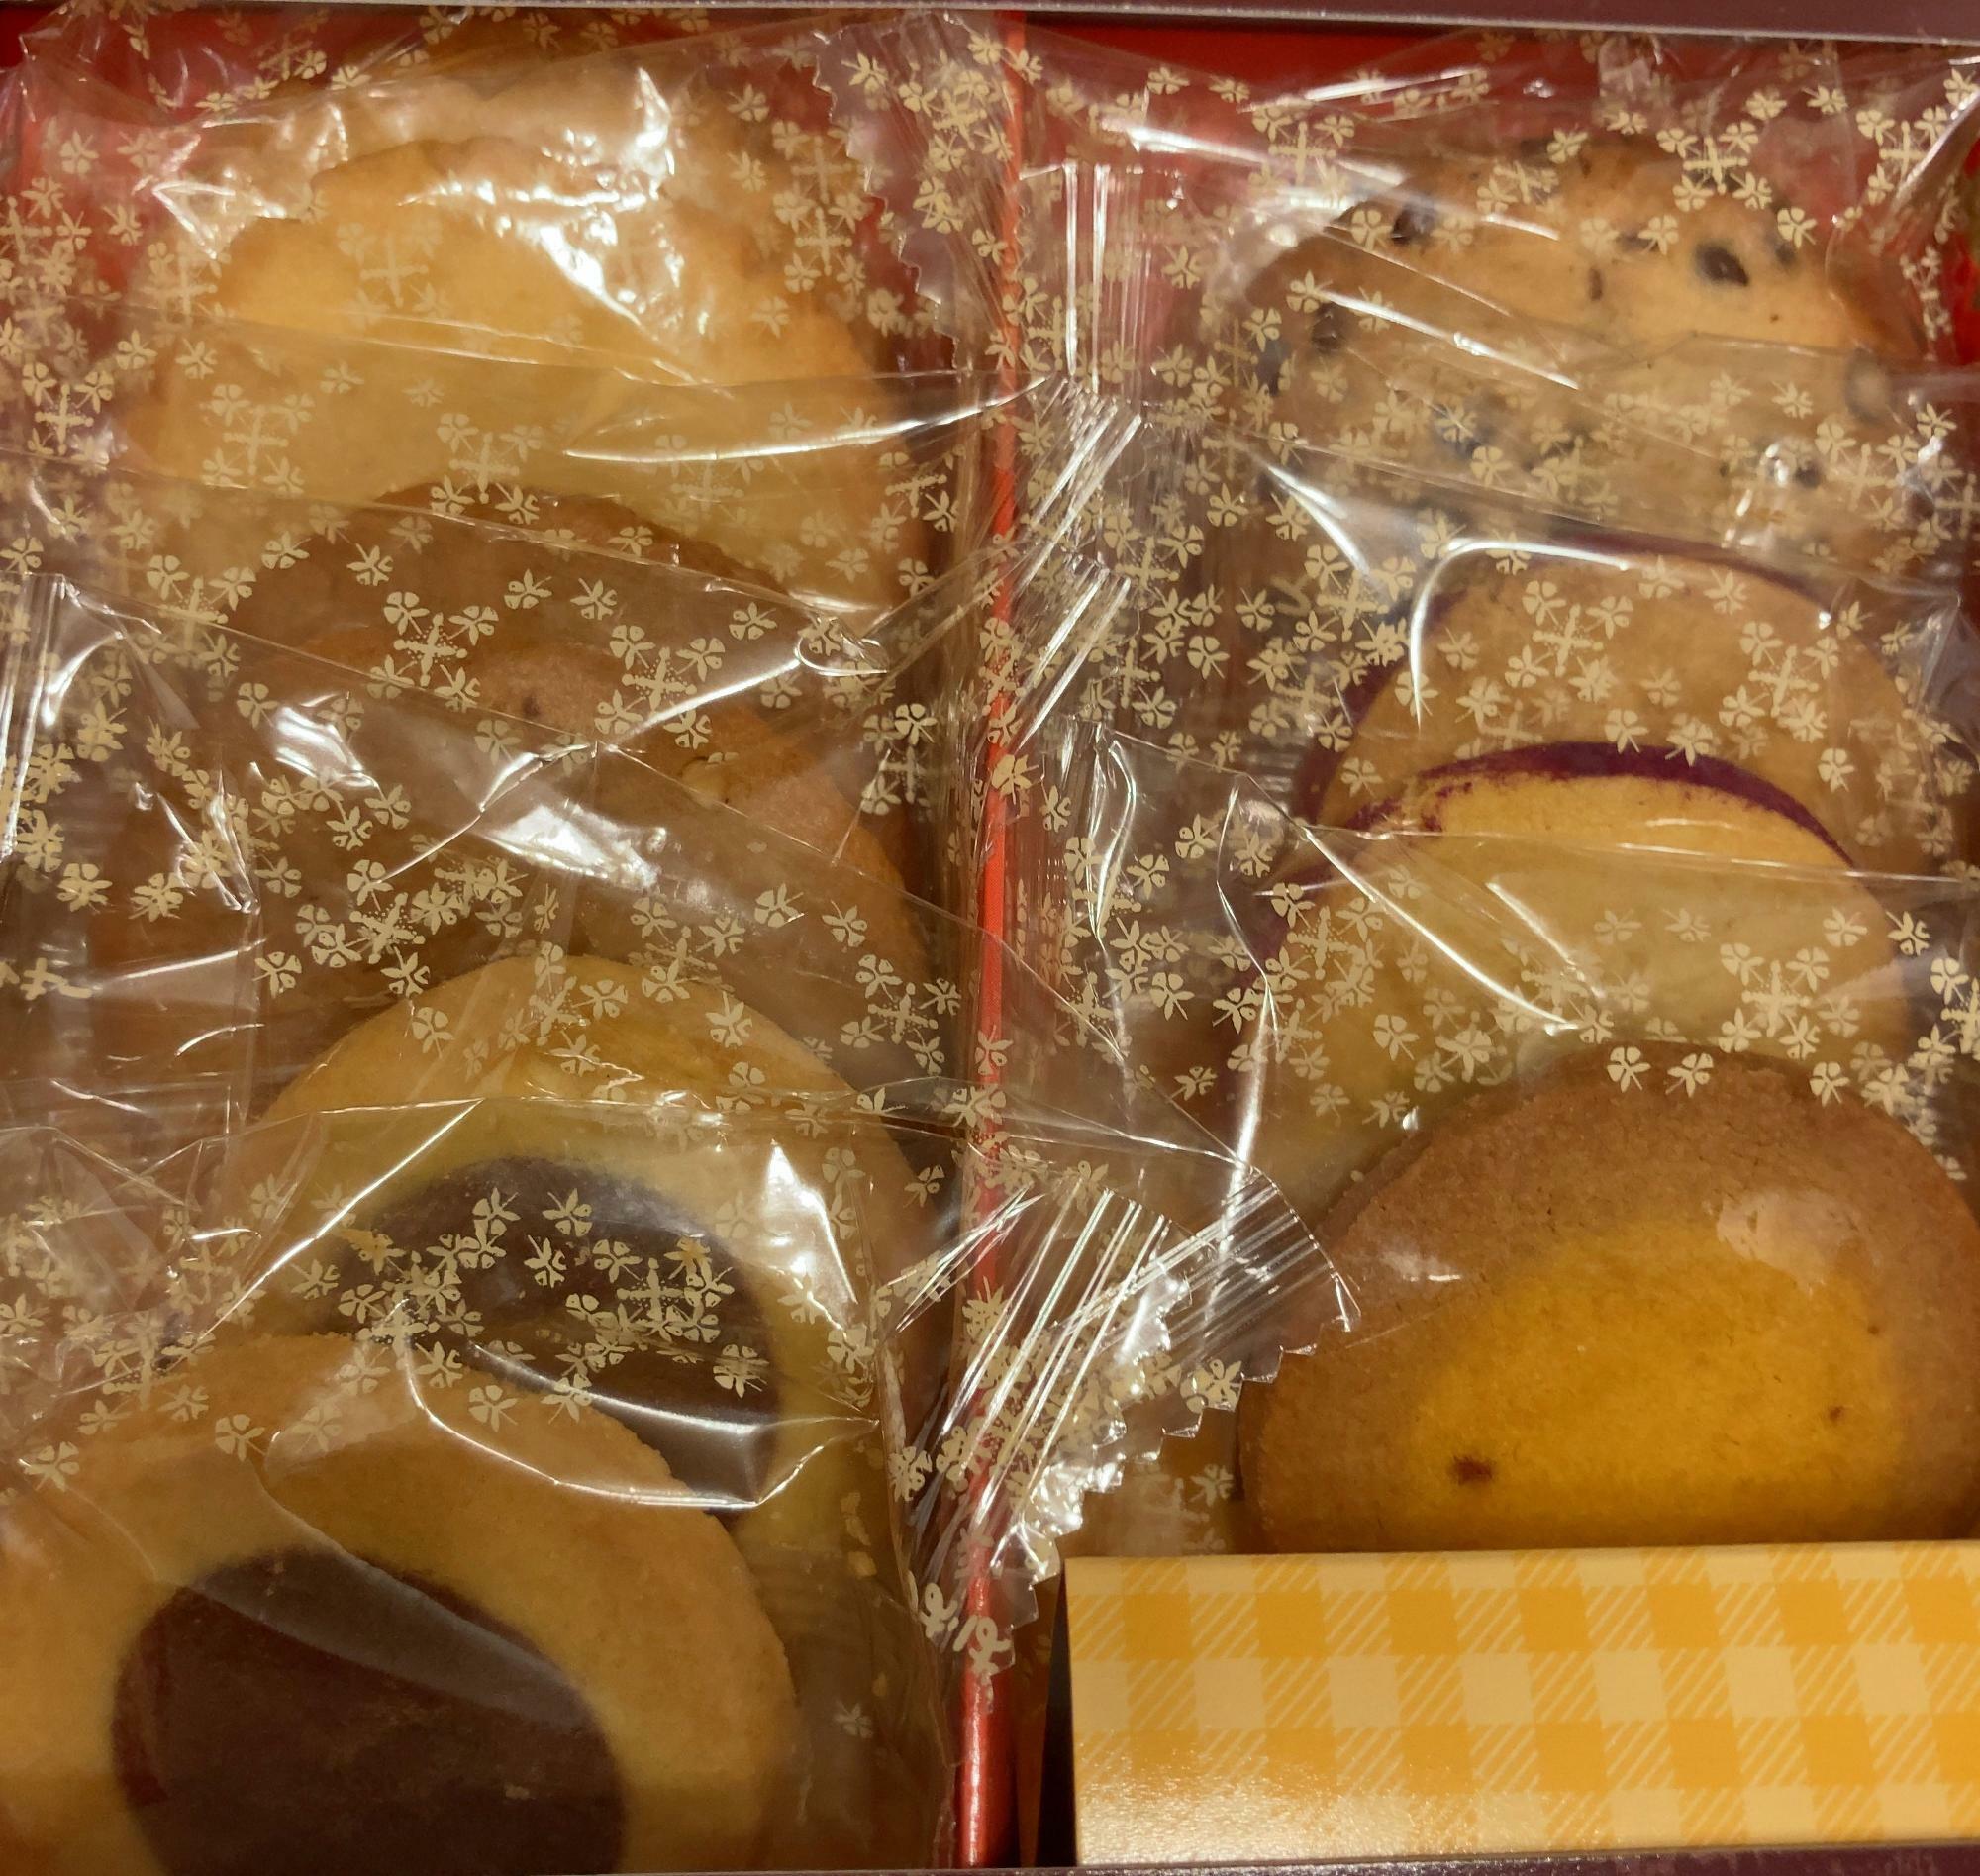 ６種類11個入り（1,080円）のクッキーです。